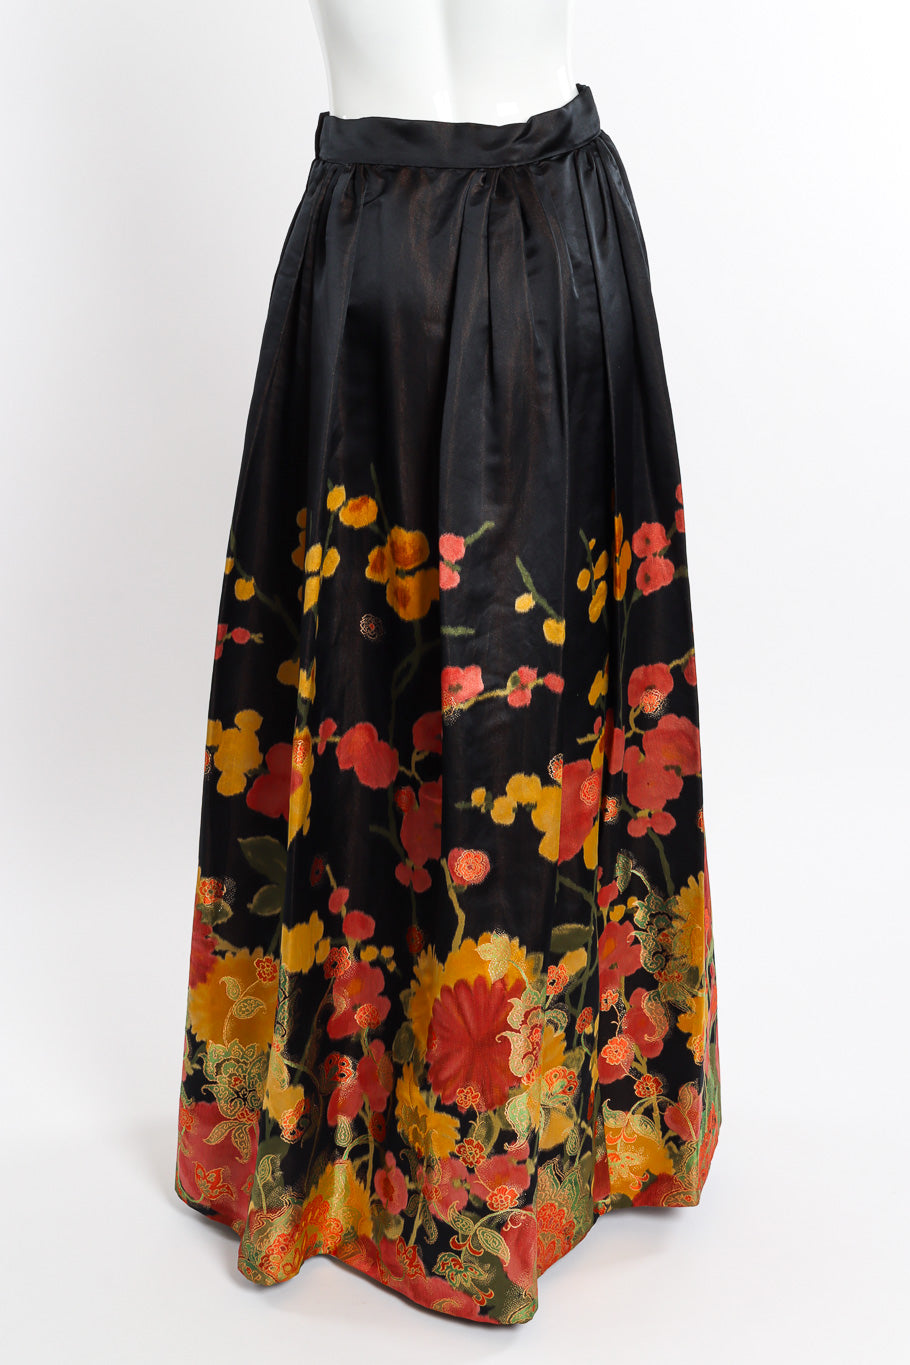 Vintage I.Magnin Floral Brocade Ball Skirt back on mannequin @recessla